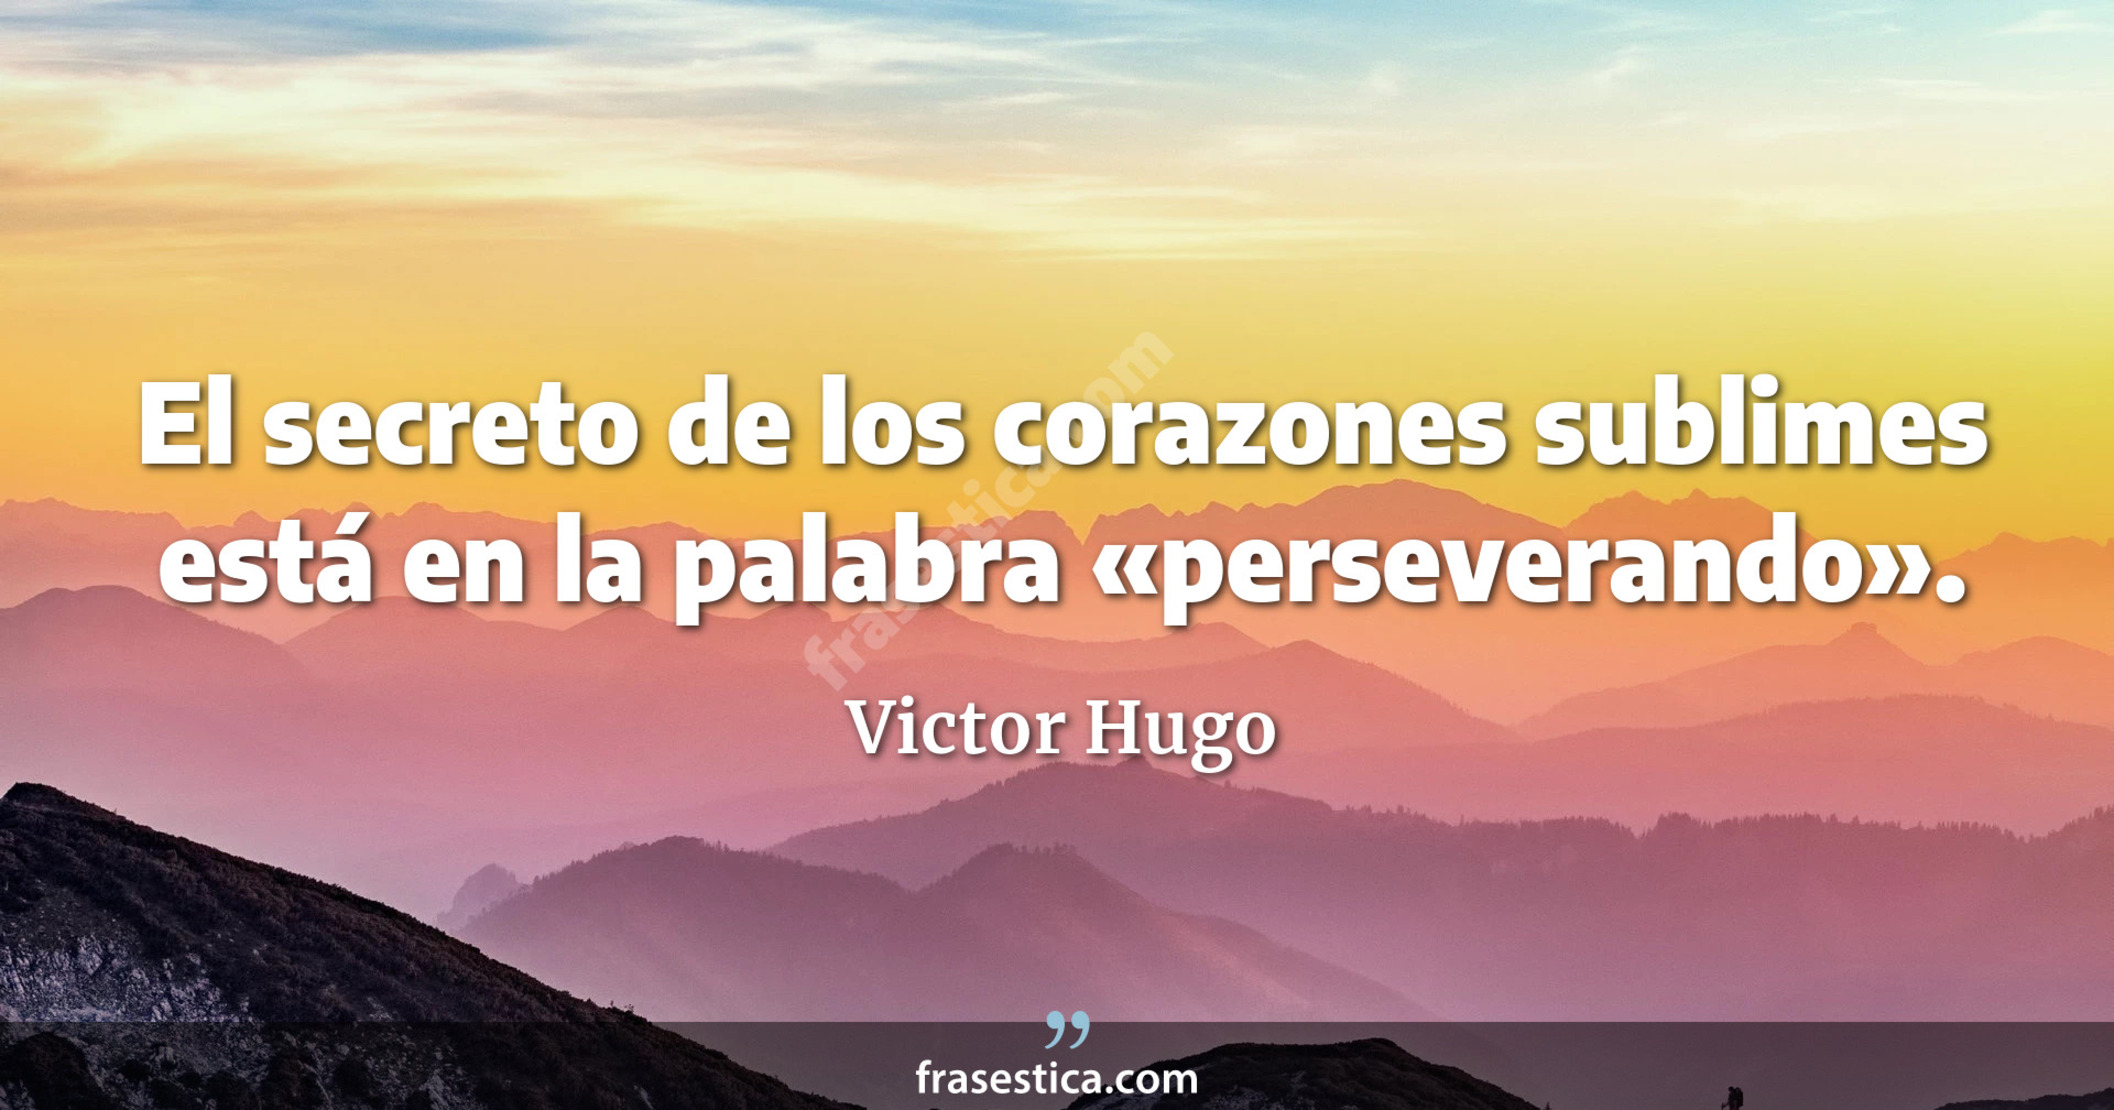 El secreto de los corazones sublimes está en la palabra «perseverando». - Victor Hugo